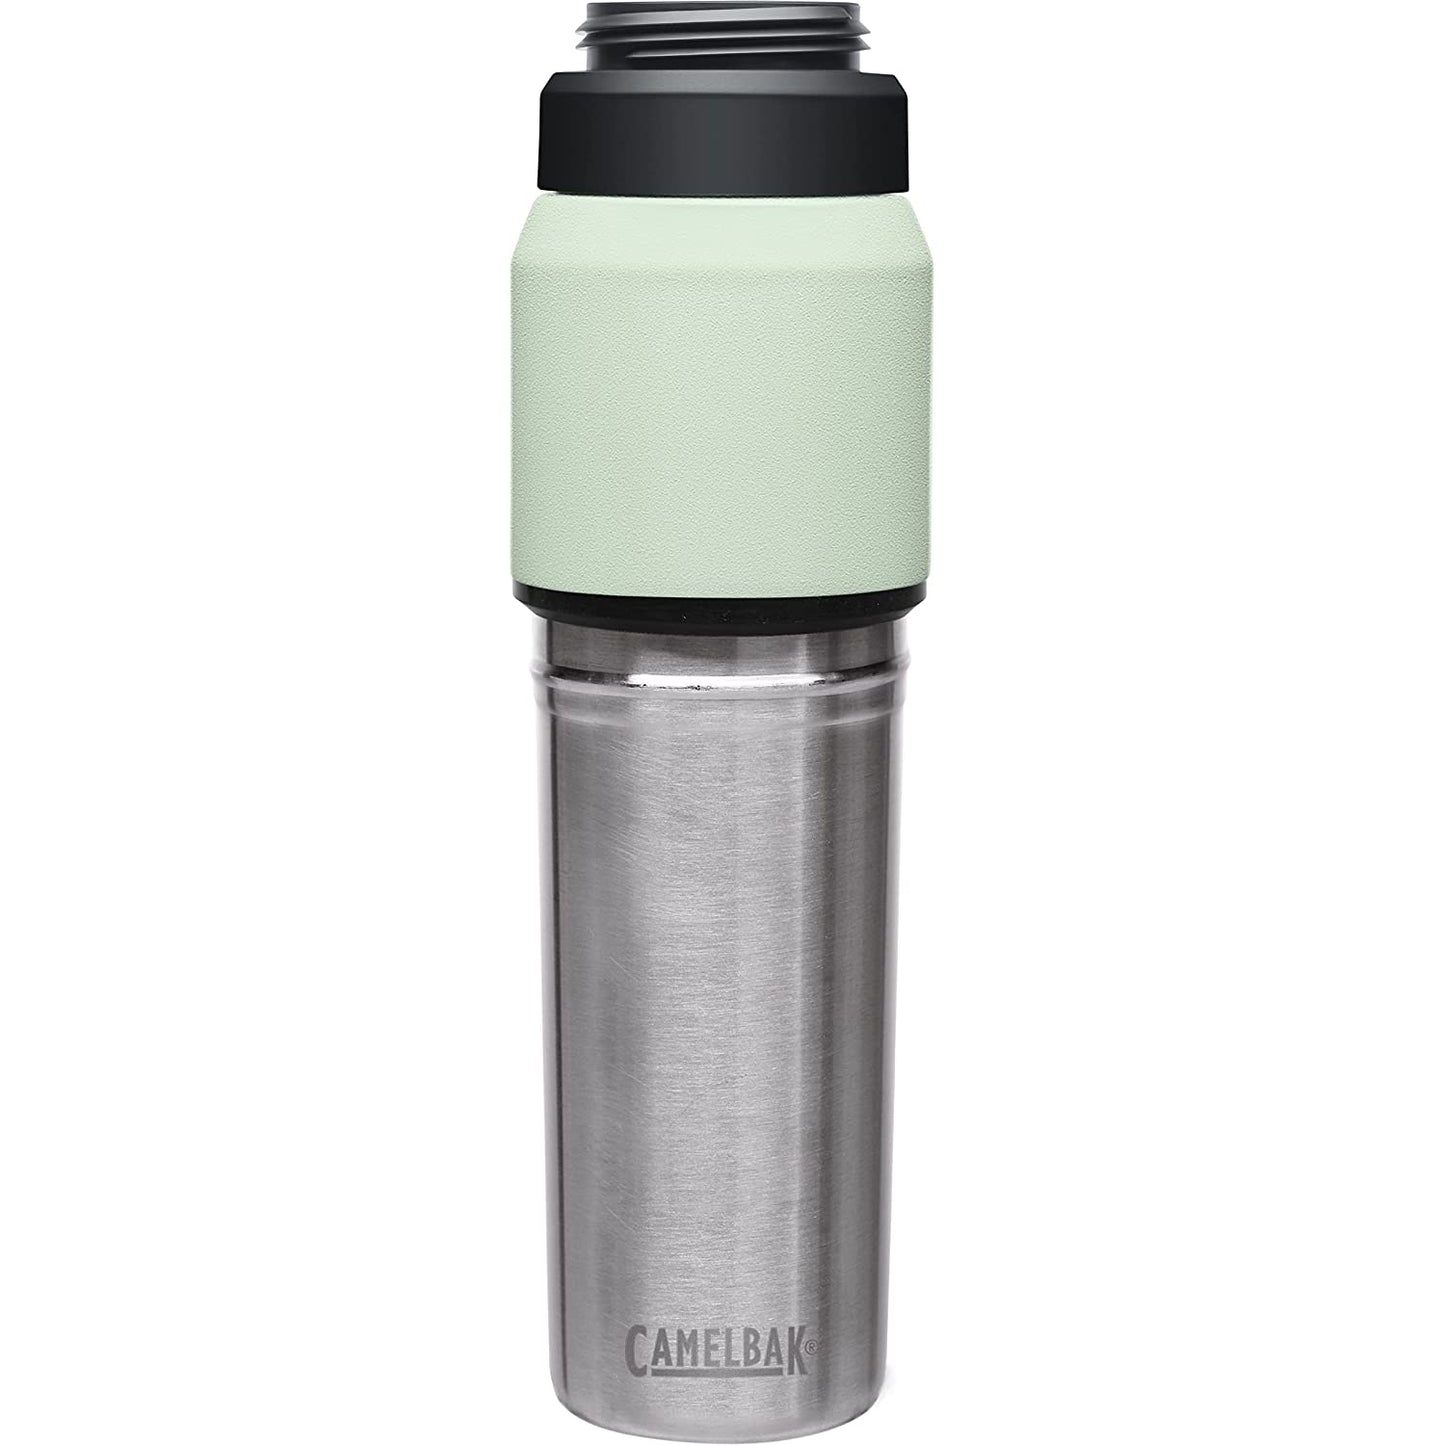 Camelbak MultiBev SST Vacuum Stainless Bottle, Moss/Mint - 22oz - Best Price online Prokicksports.com